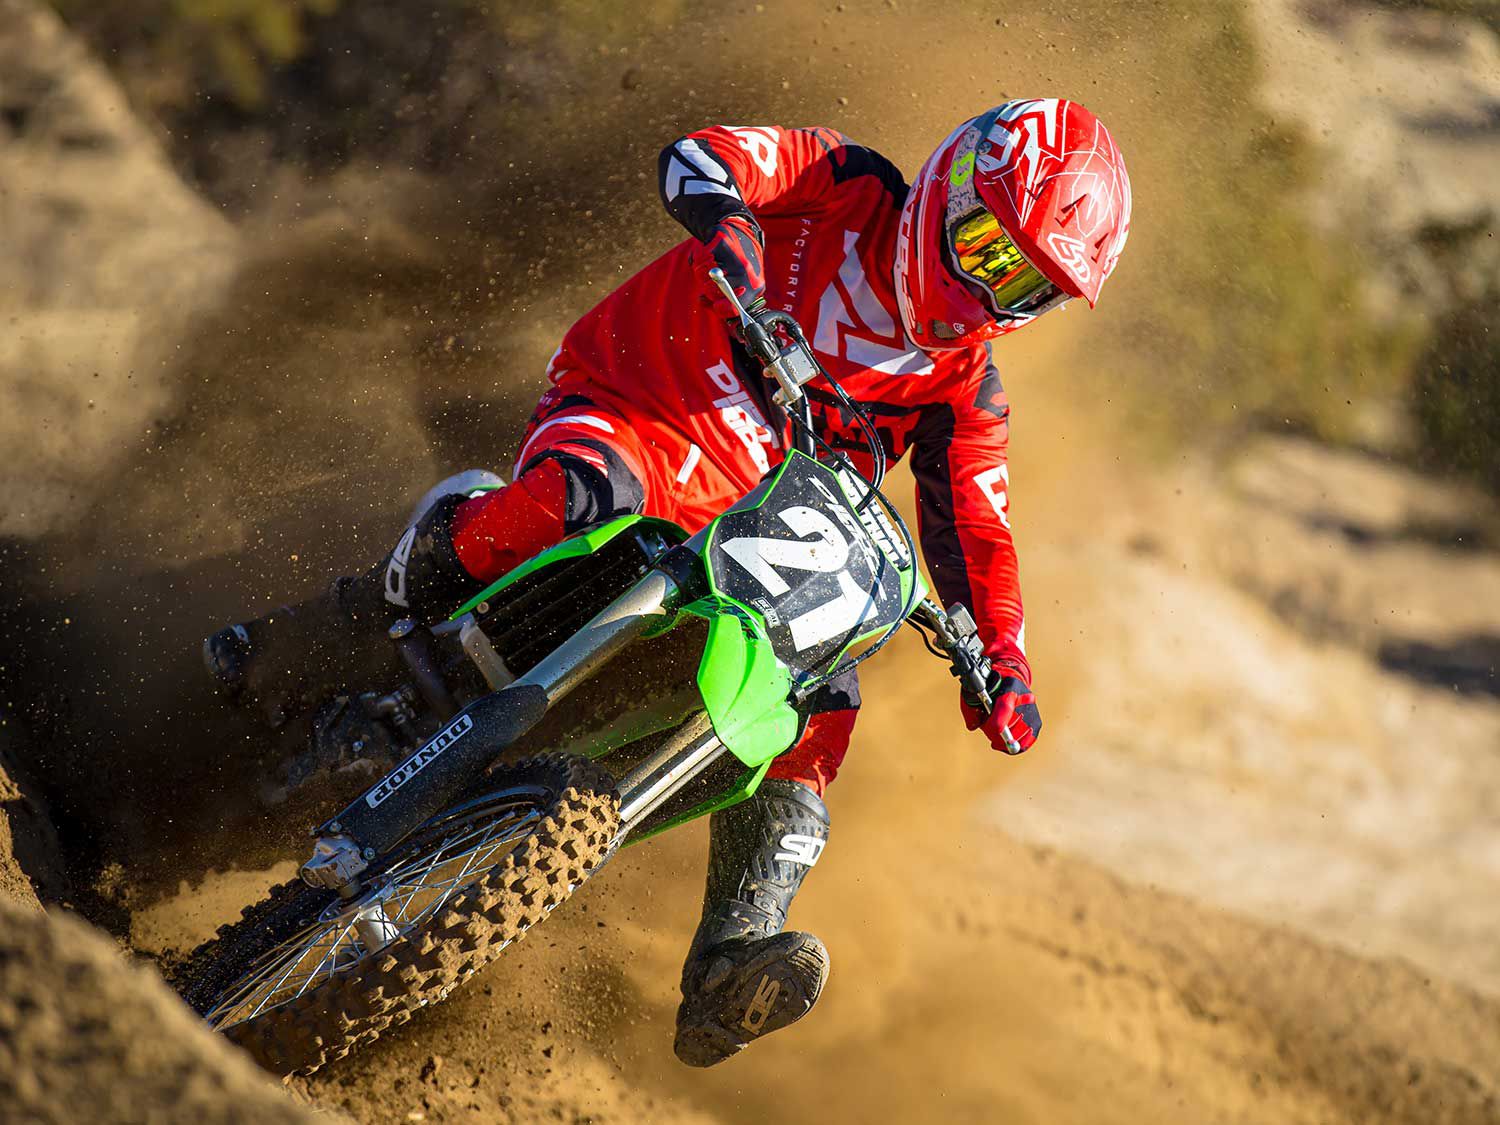 Botas Sidi Crossfire 3 SRS Blanco | Motocross, Enduro, Trail, Trial |  GreenlandMX